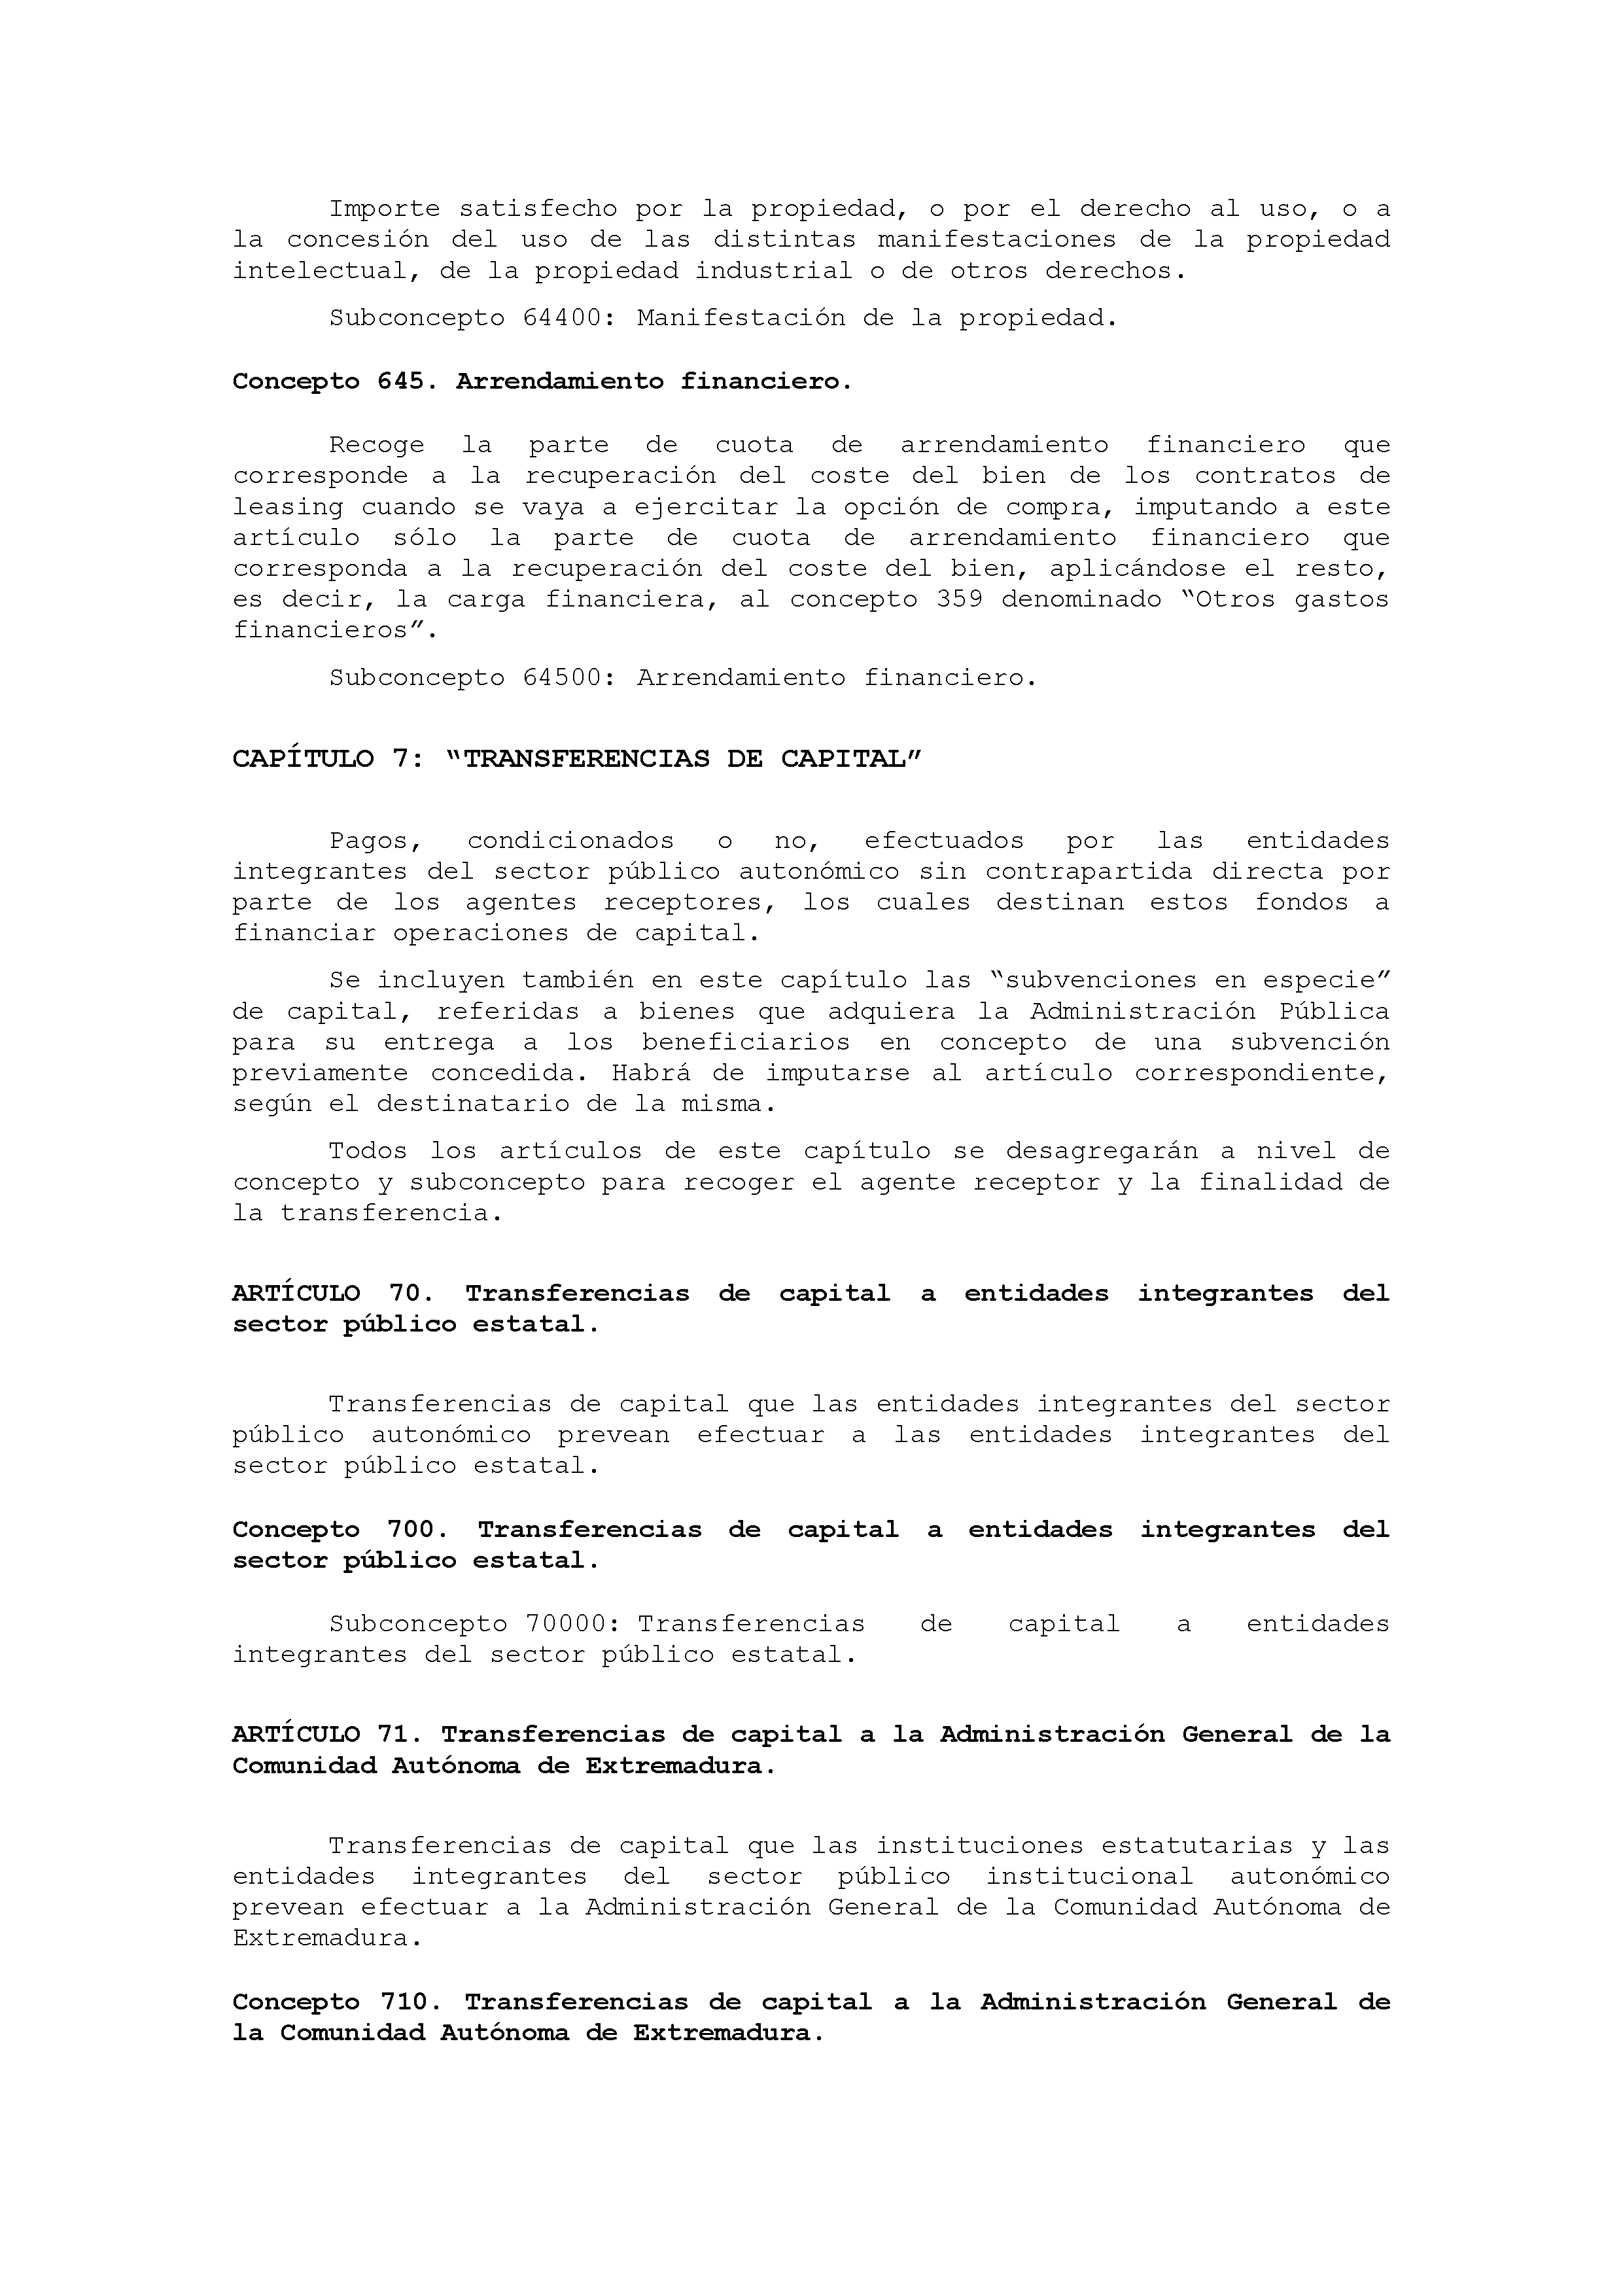 ANEXO IX CÓDIGO DE LA CLASIFICACIÓN ECONÓMICA DE LOS GASTOS PÚBLICOS Pag 40